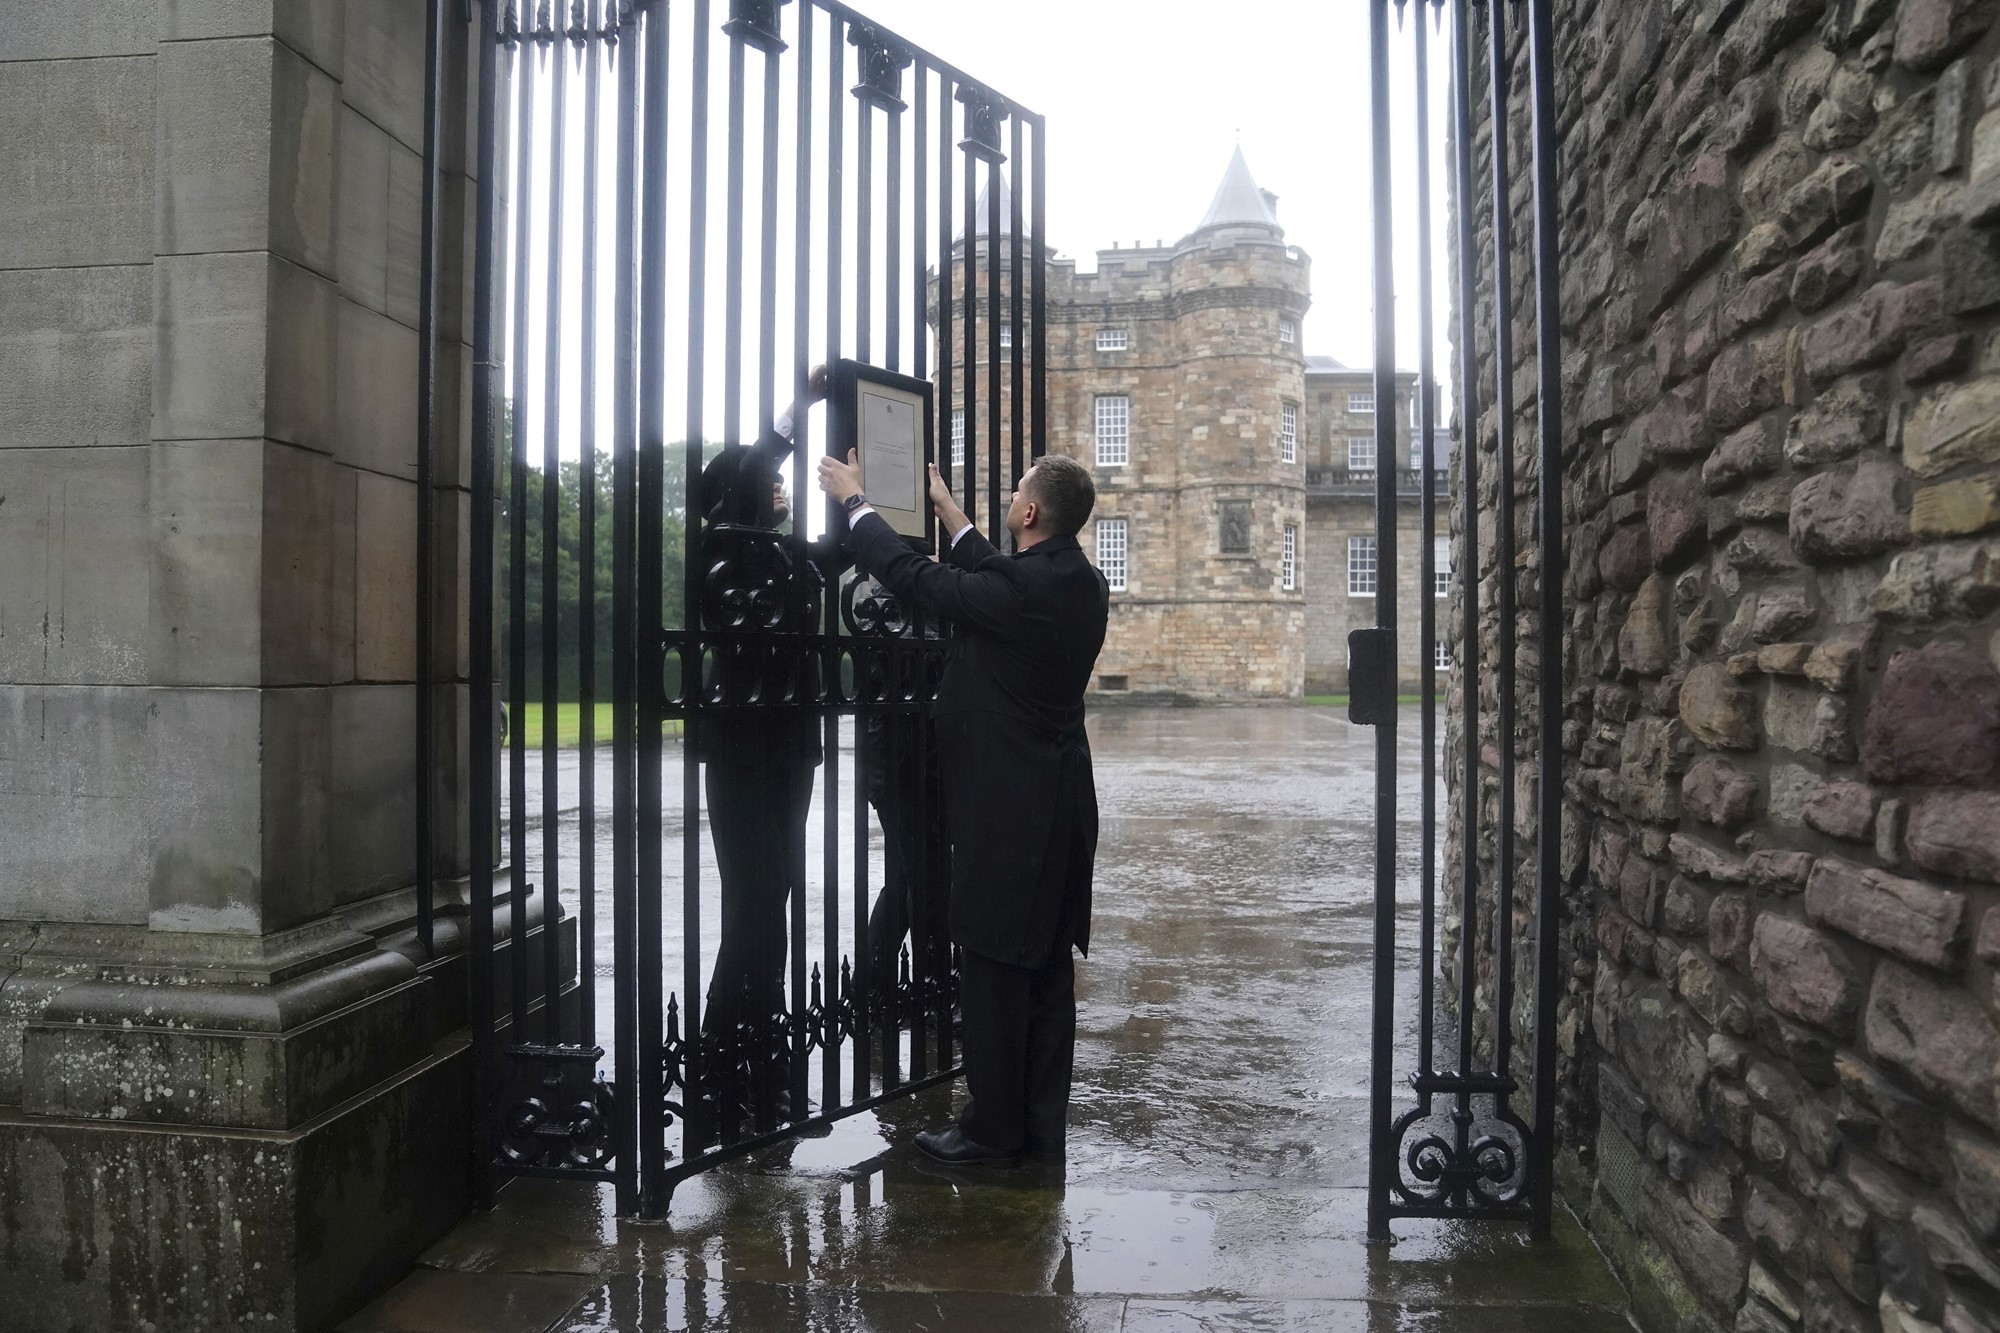 Les membres du personnel de la maison royale affichent un avis sur les portes du palais de Holyroodhouse